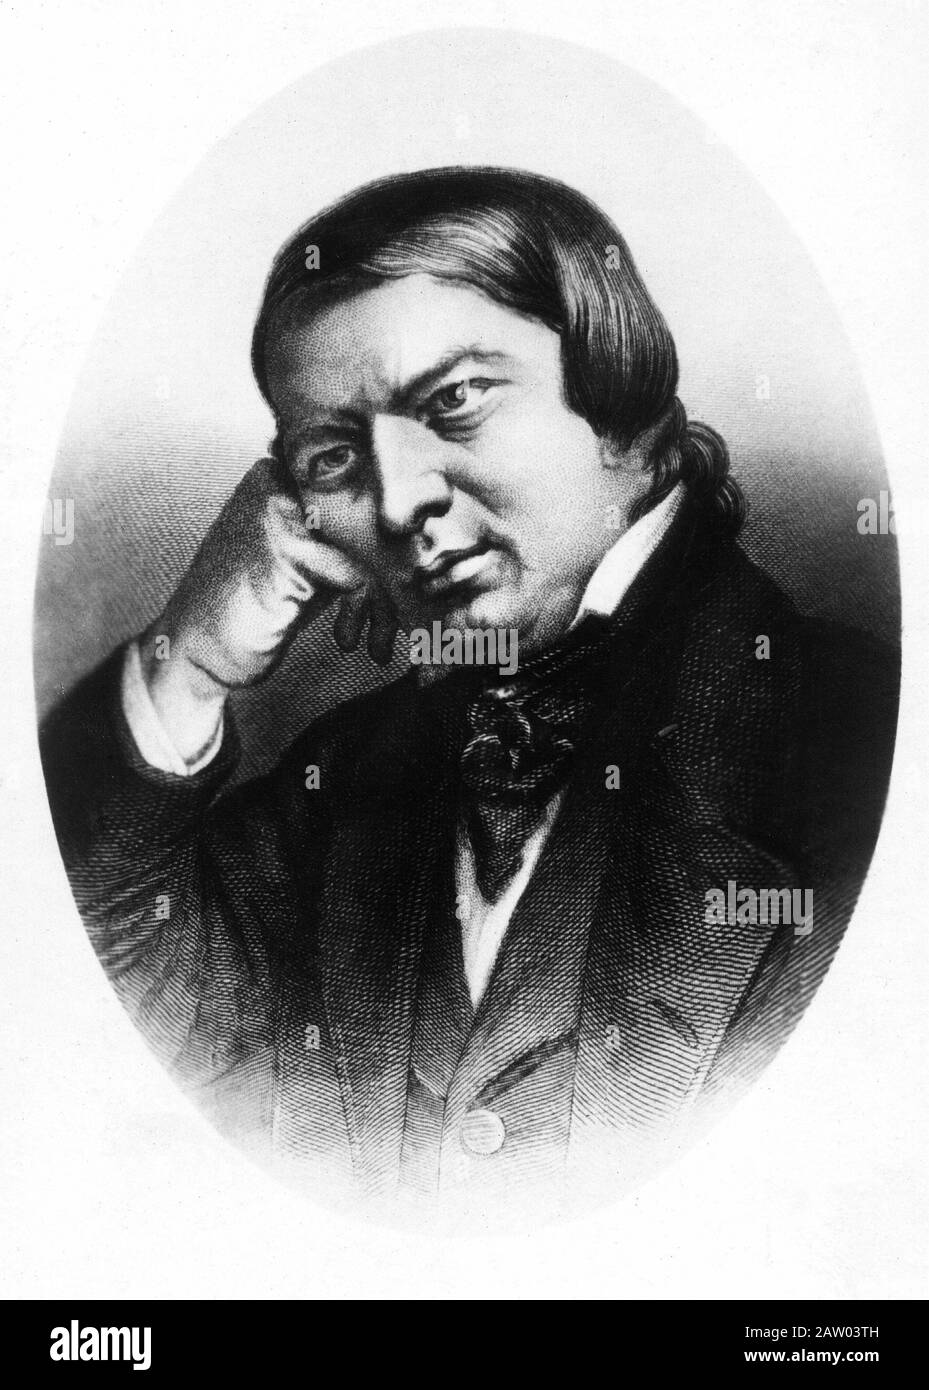 Le compositeur allemand de musique classique Robert SCHUMANN ( 1810 - 1856 ) - ROMANTICISMO - ROMANTISME - gravure de portrait - ritratto incisione - collier - Banque D'Images